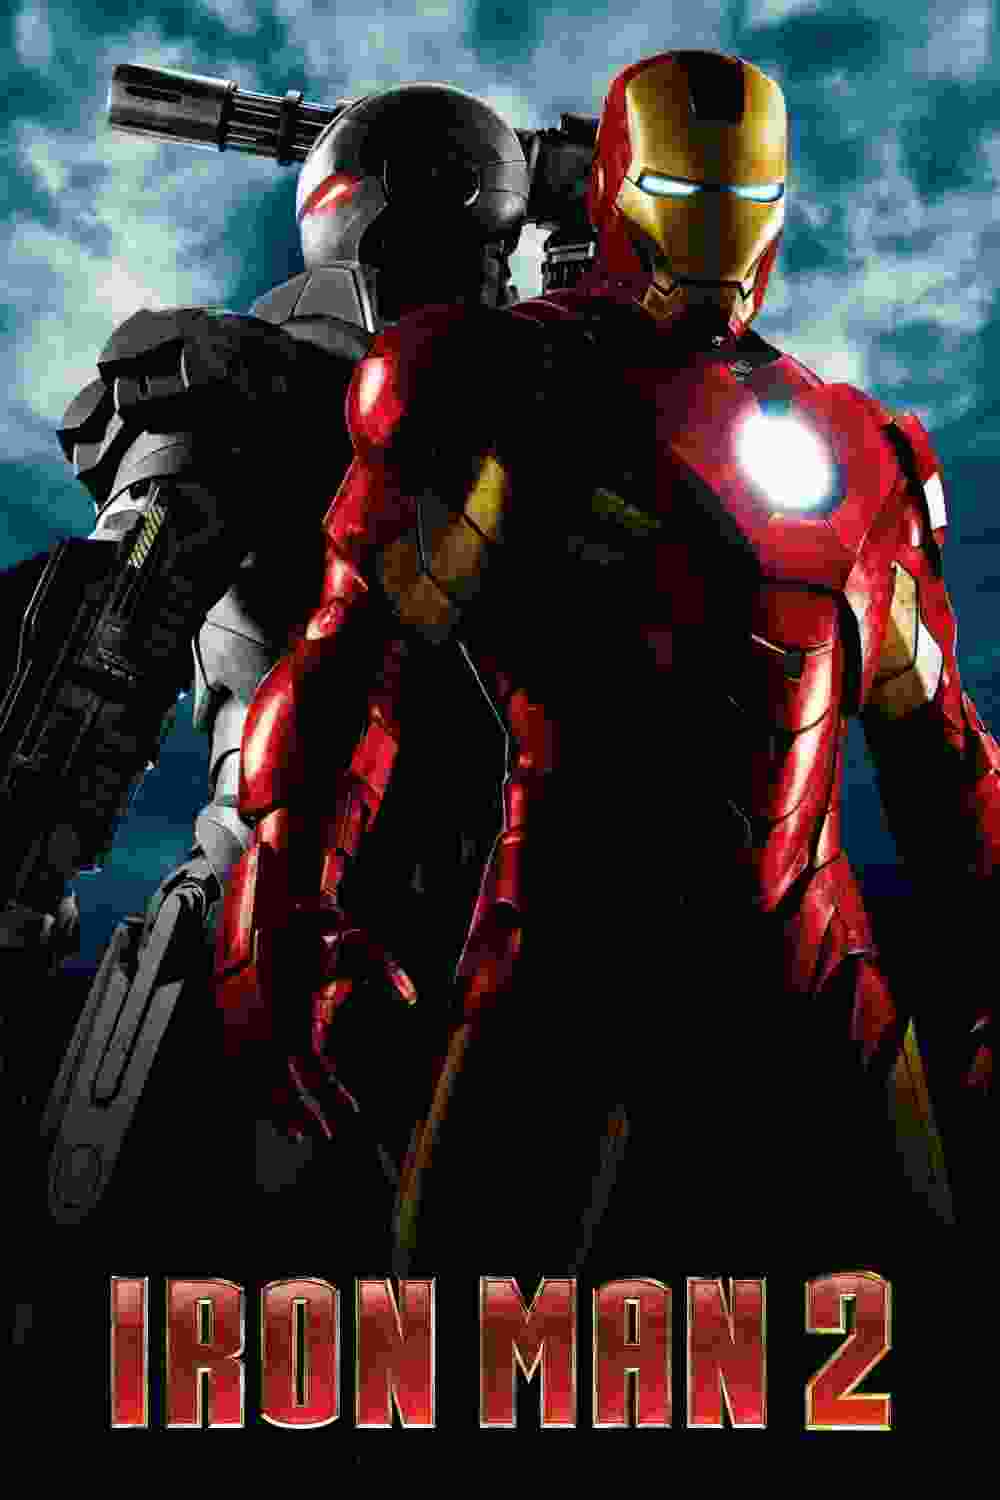 Iron Man 2 (2010) Robert Downey Jr.